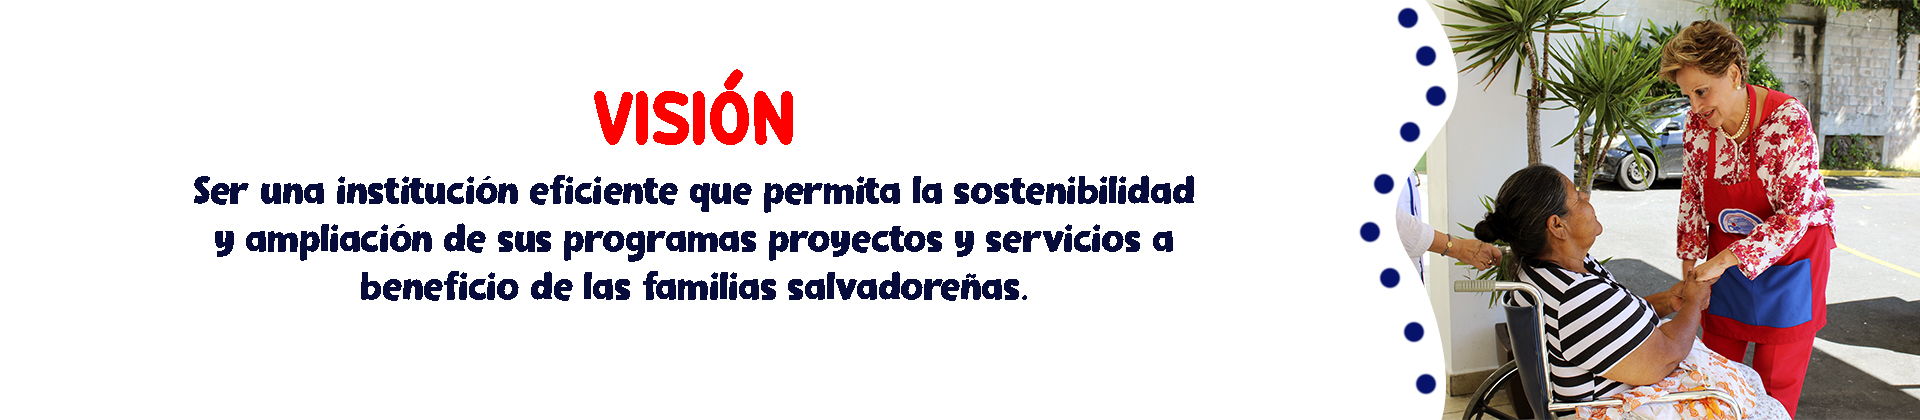 Visión: Ser una institución eficiente que permita la sostenibilidad y ampliación de sus programas, proyectos y servicios a beneficio de las familias salvadoreñas.